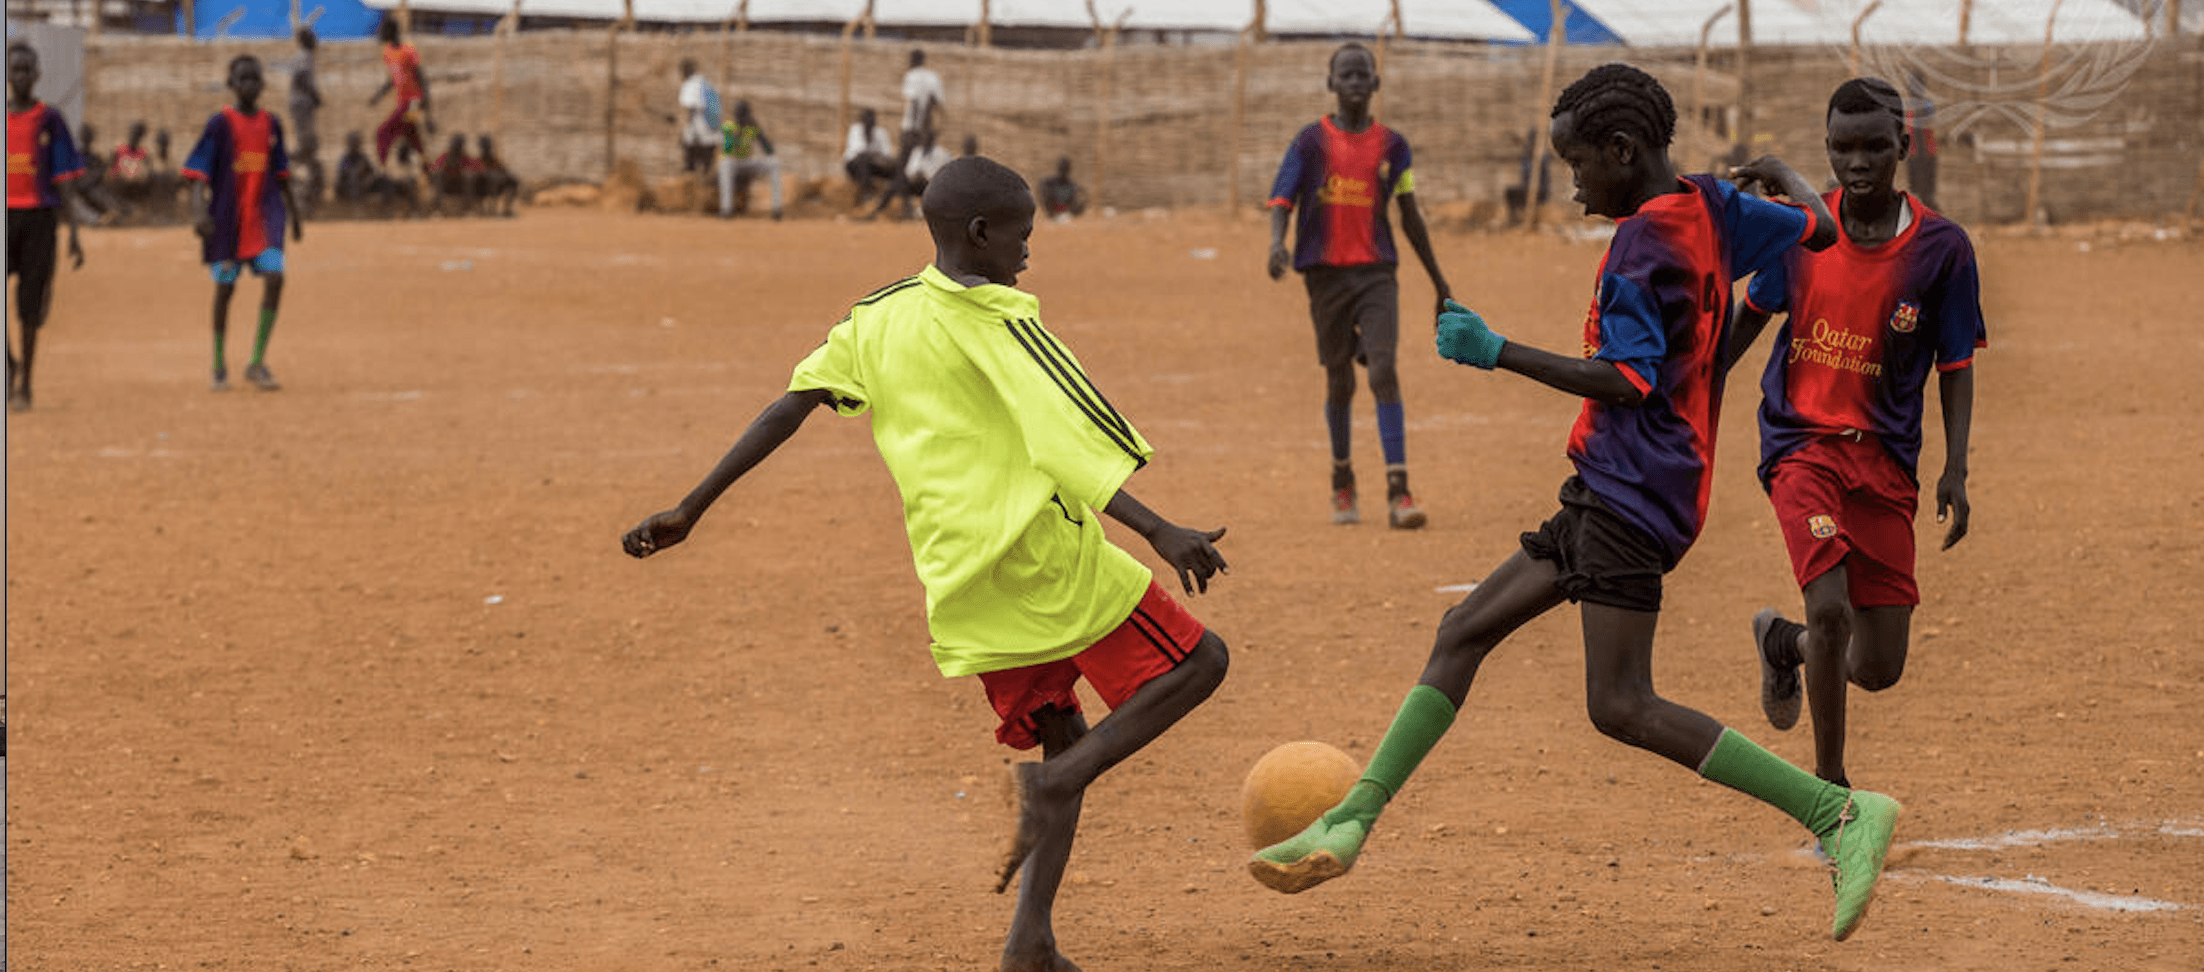 Den internasjonale dagen for idrett, utvikling og fred